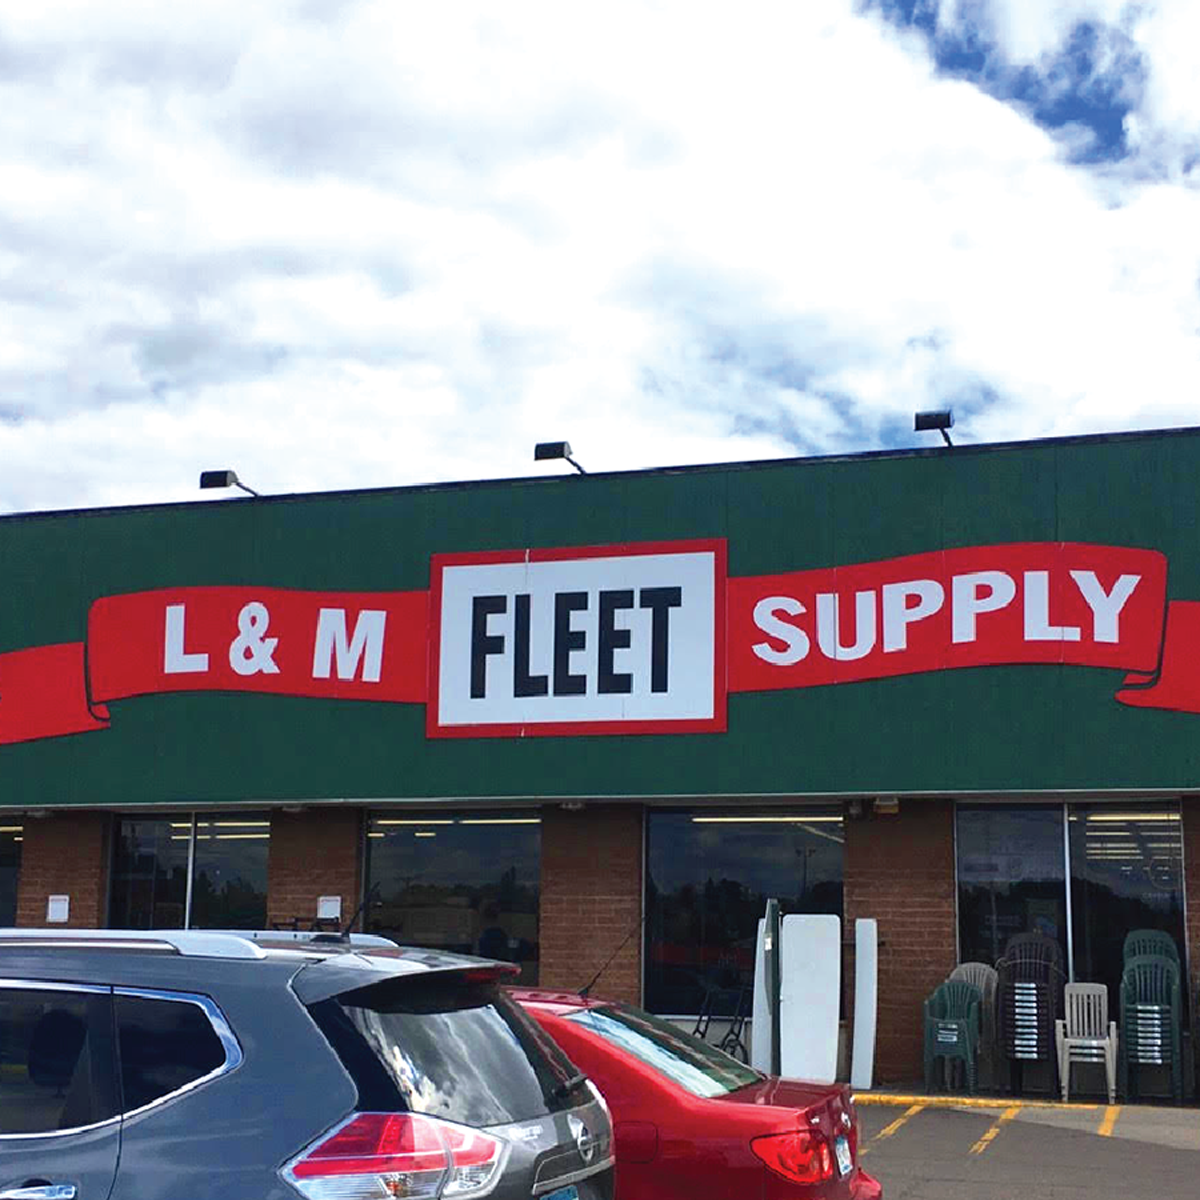 L&M Fleet Supply Cloquet (218)879-8723